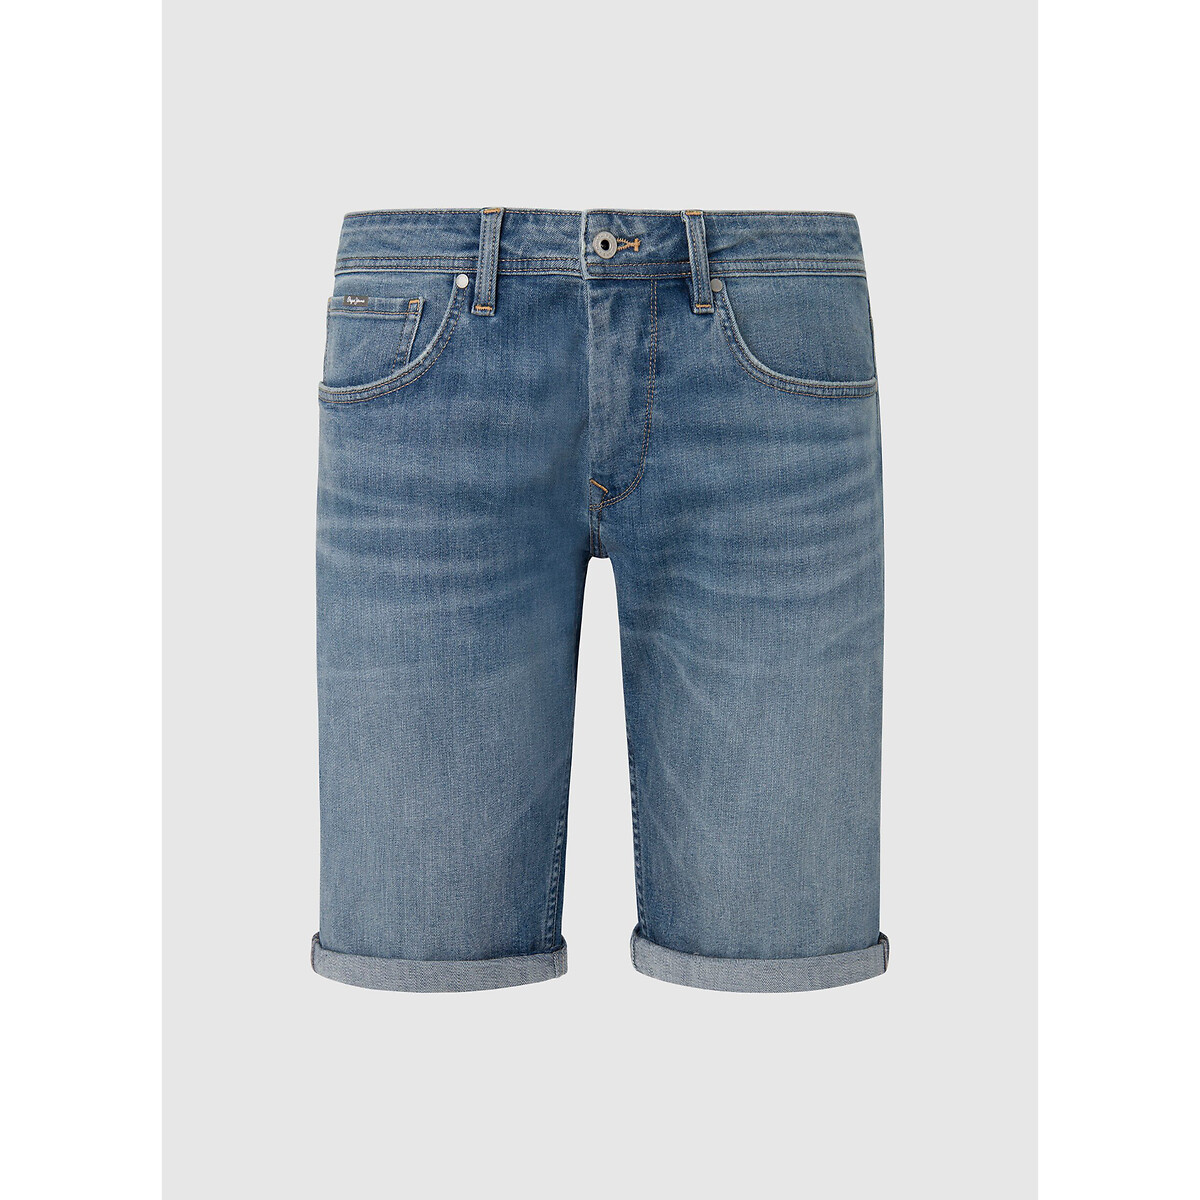 Шорты из джинсовой ткани прямого покроя  34 (US) синий LaRedoute, размер 34 (US) Шорты из джинсовой ткани прямого покроя  34 (US) синий - фото 1